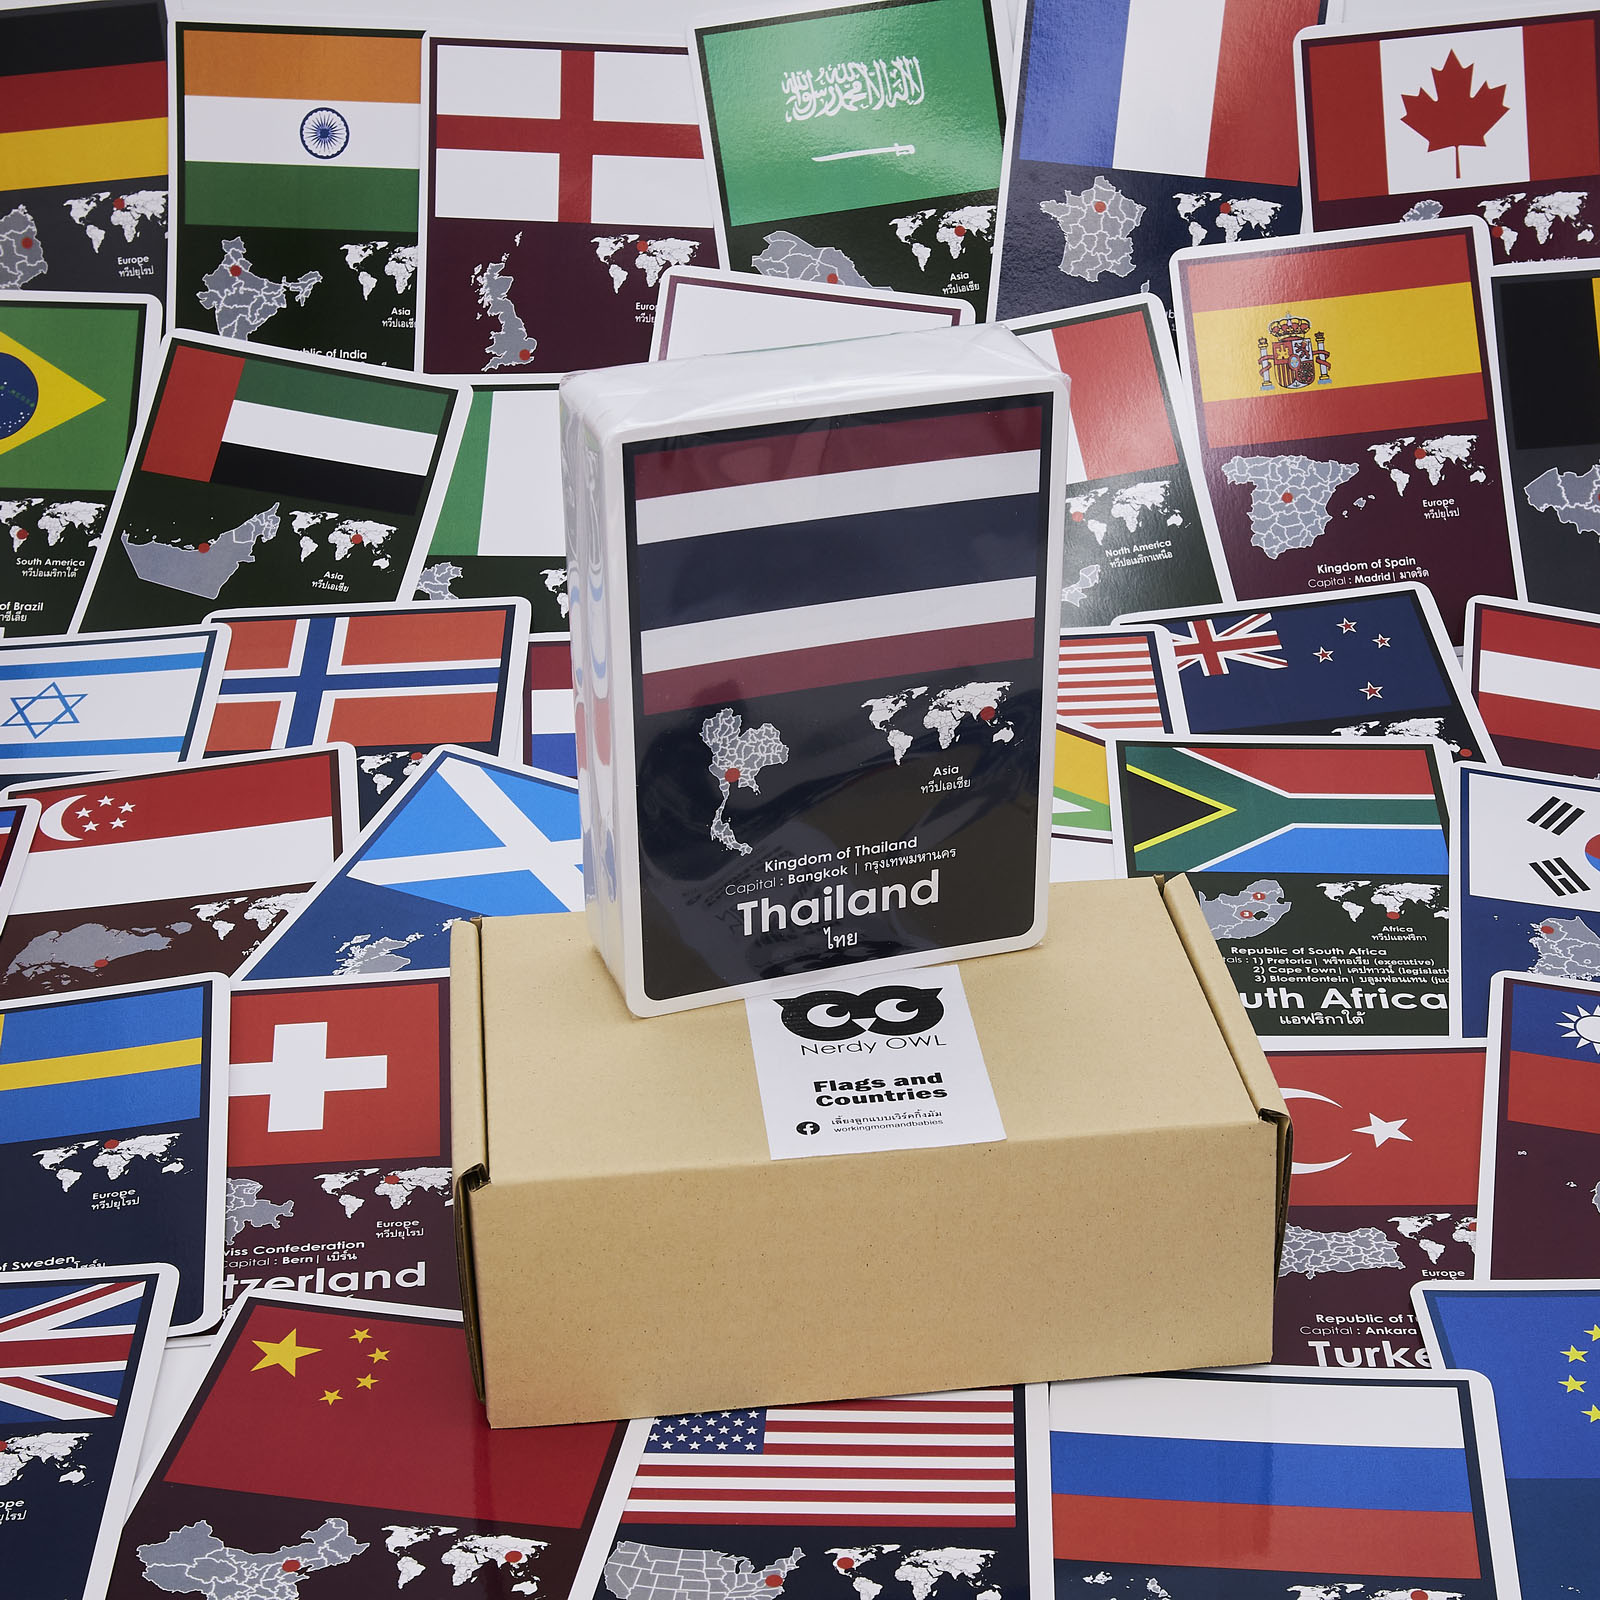 แฟลชการ์ด ธงชาติ และประเทศ Flash Cards Flags and Countries บัตรคำ การ์ดคำศัพท์ เนิร์ดดี้อาว (Nerdy Owl) จำนวนมากที่สุดถึง 108 ใบ ของเล่นเสริมพัฒนาการ